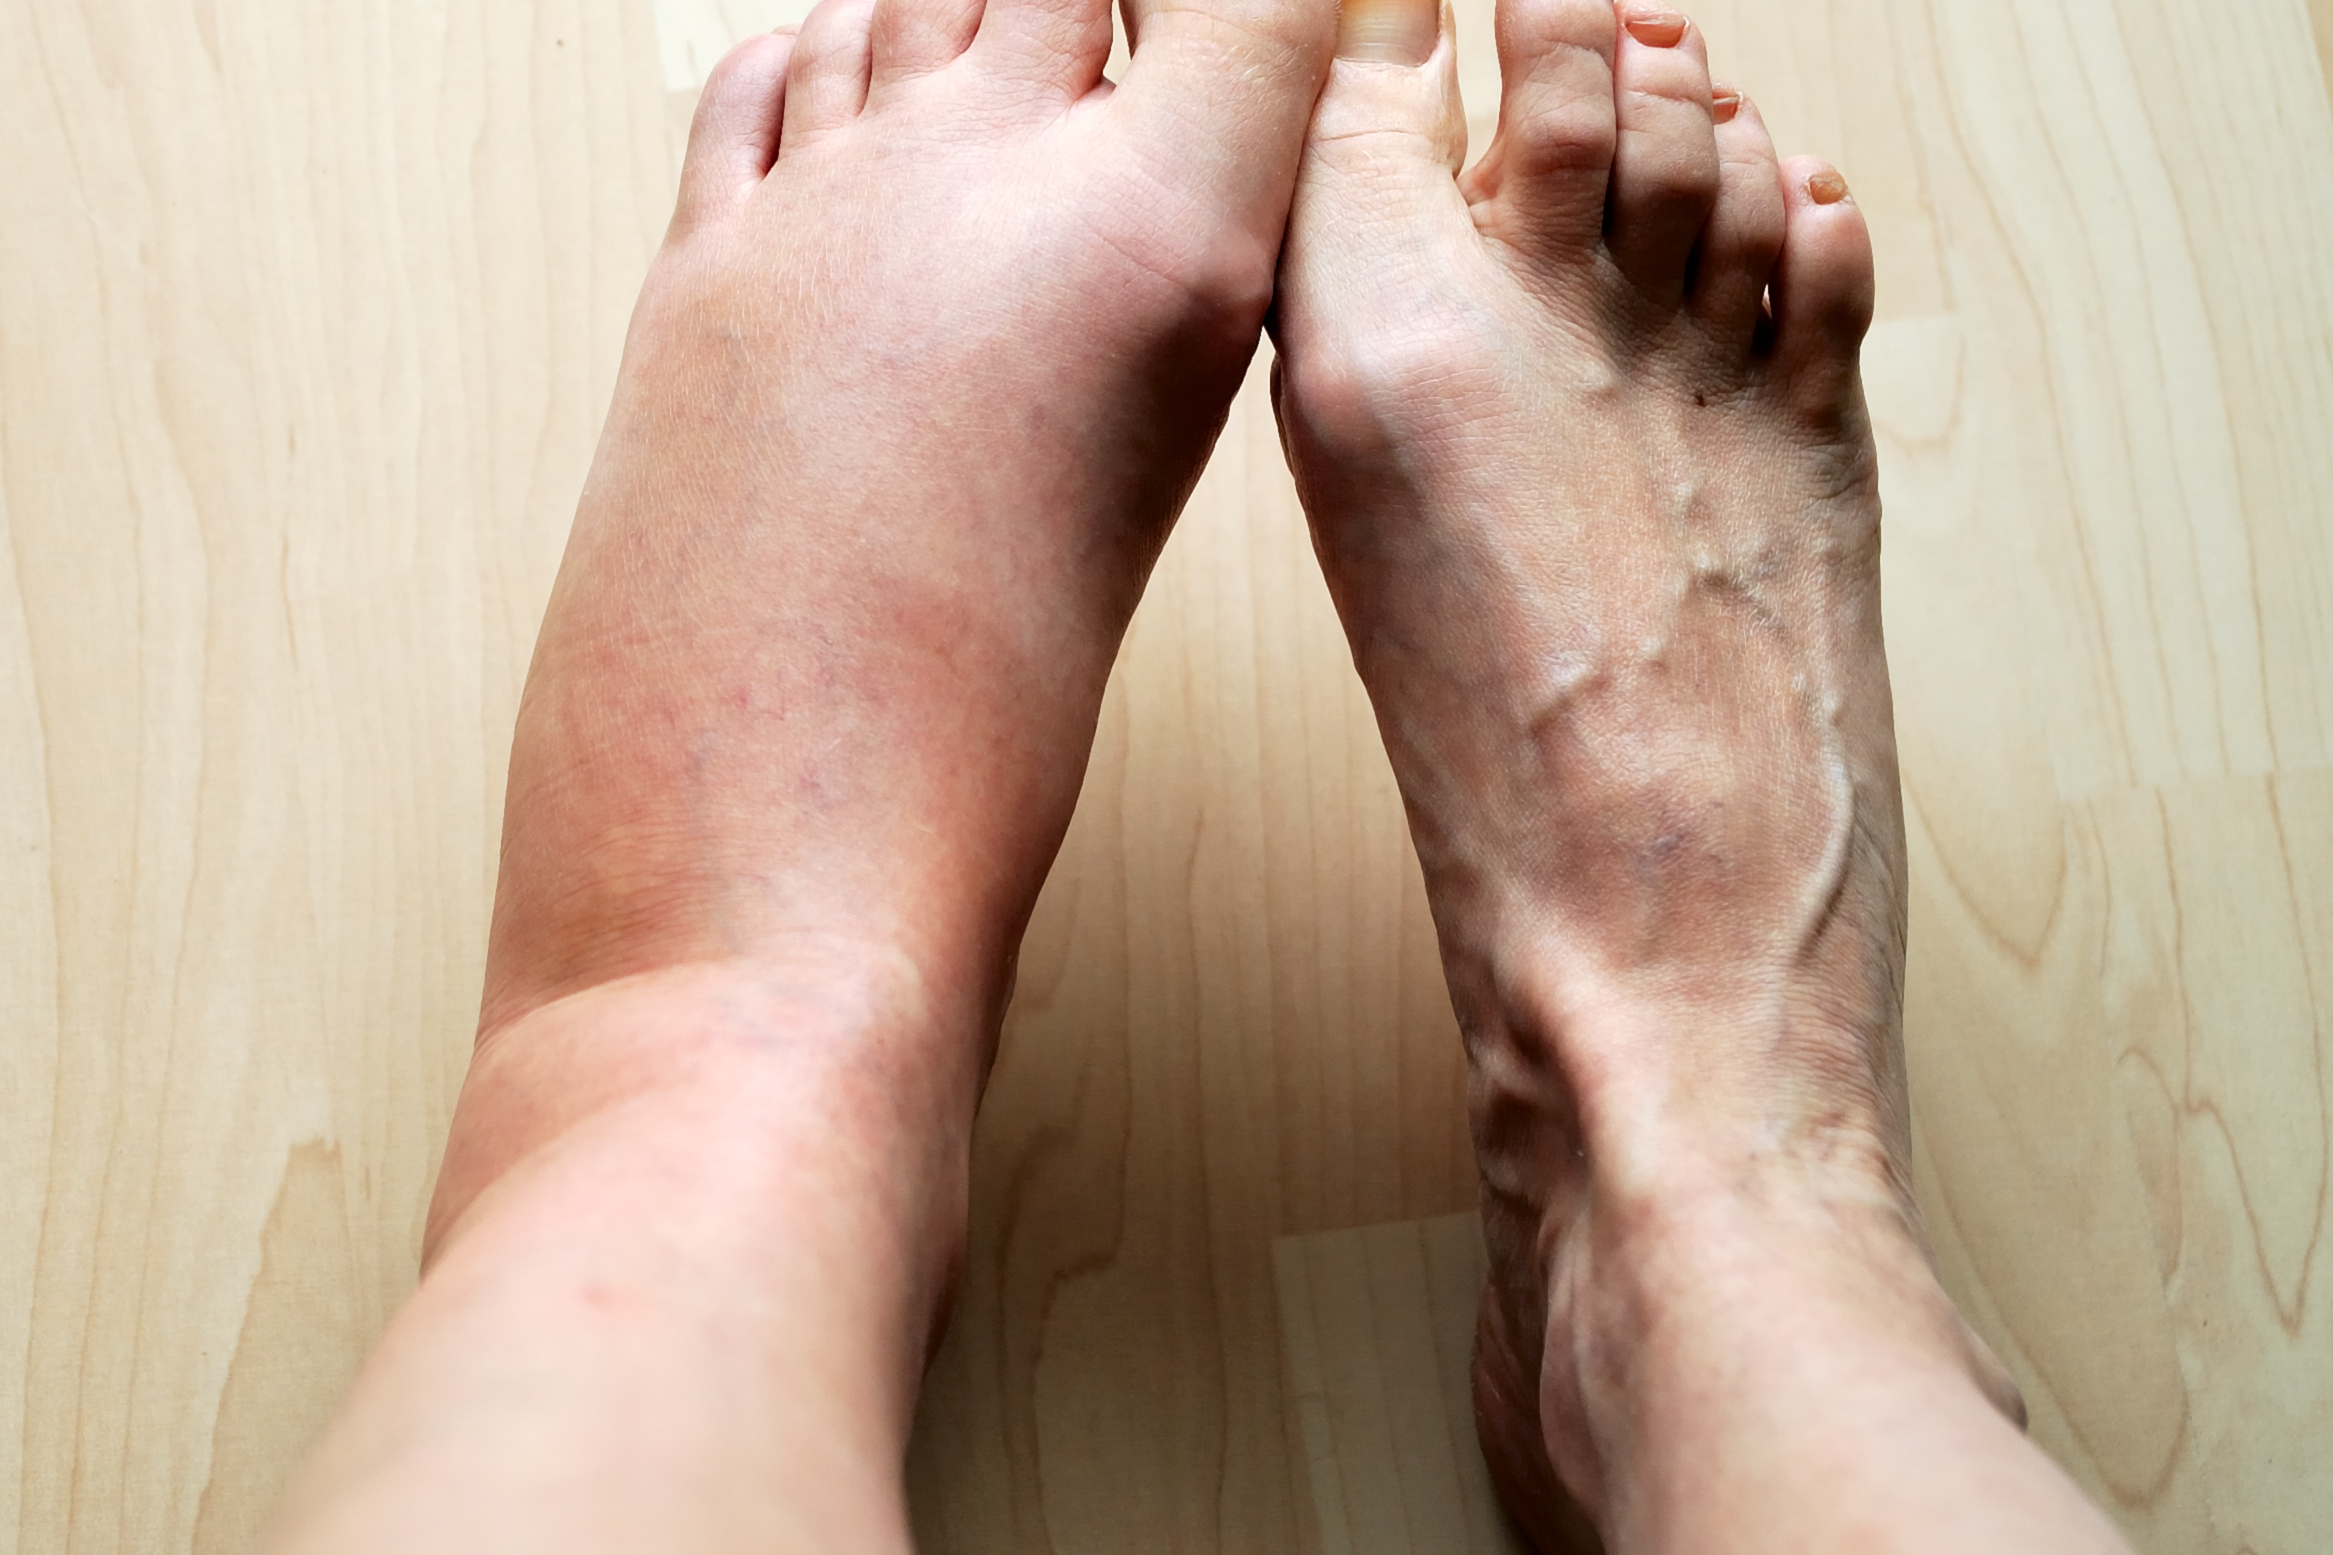 Picioare umflate: cauze, remedii, preventie, riscuri